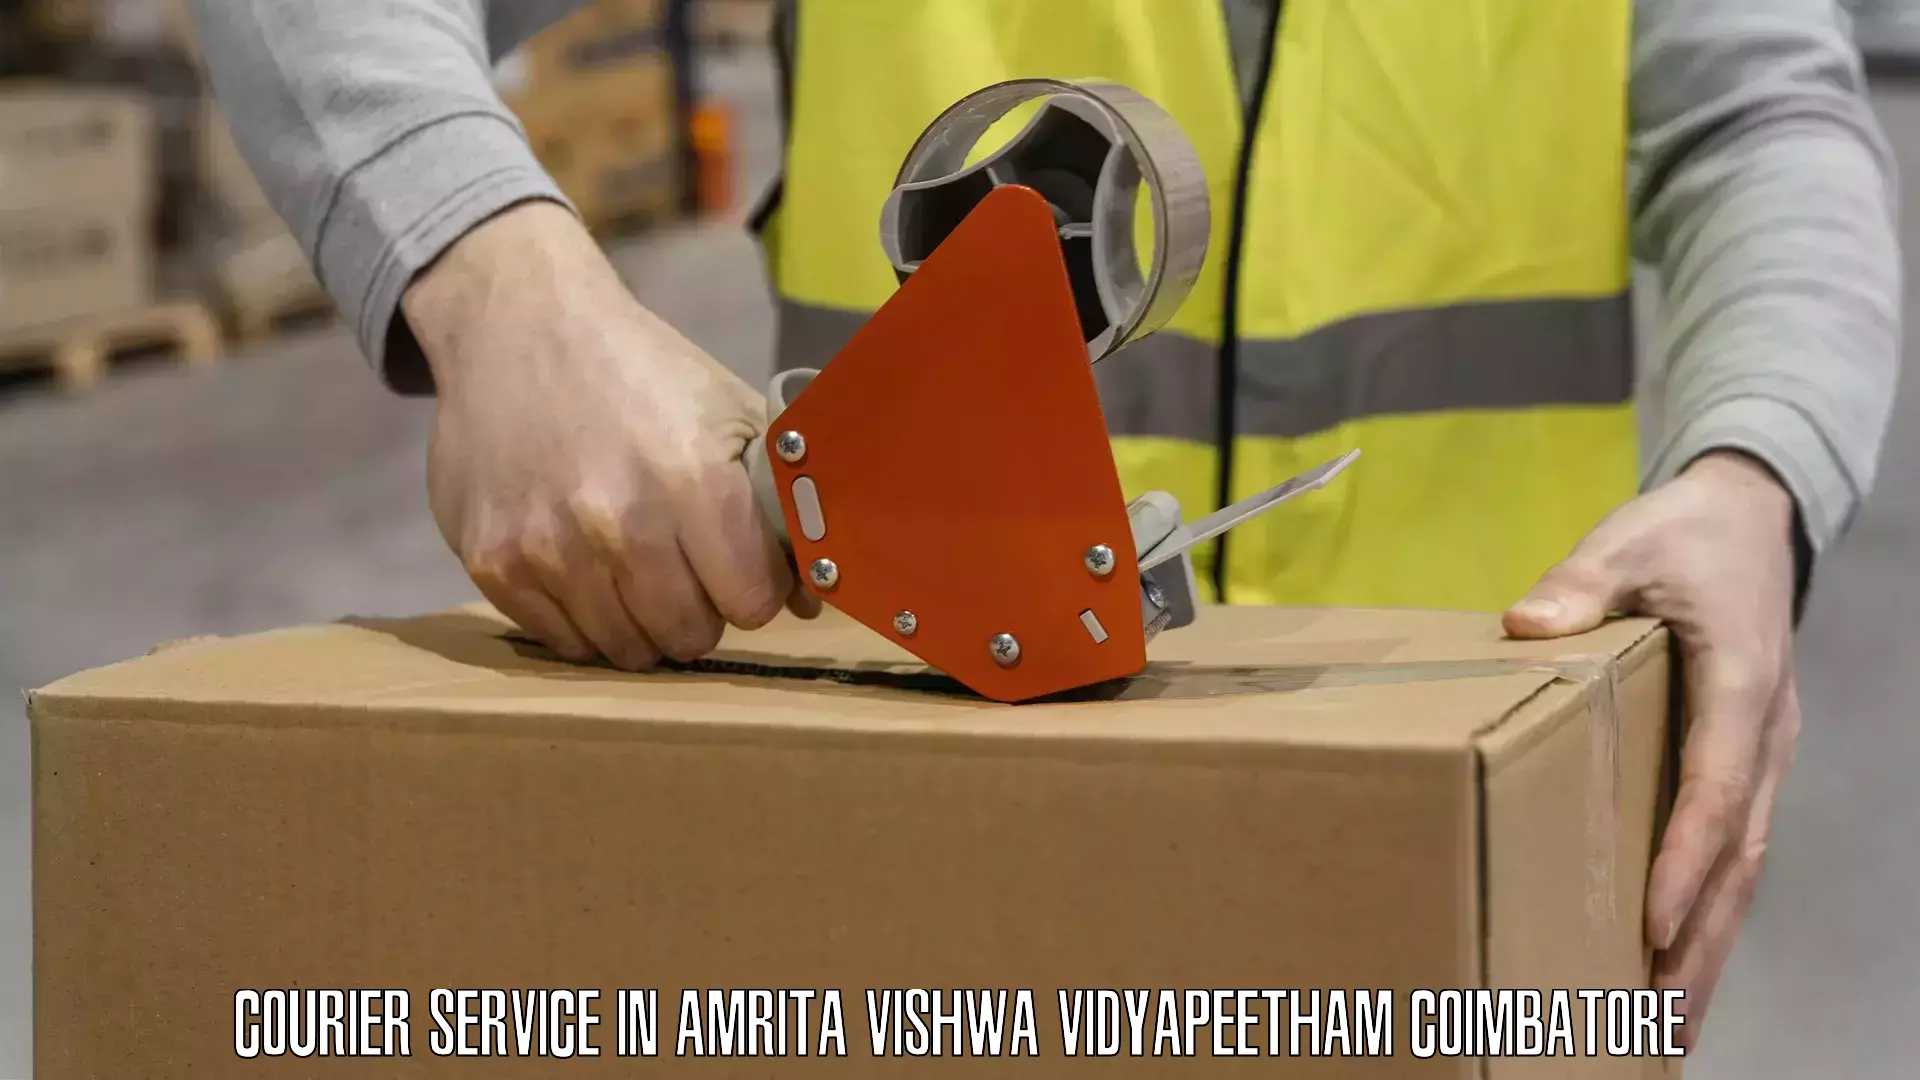 Shipping and handling in Amrita Vishwa Vidyapeetham Coimbatore